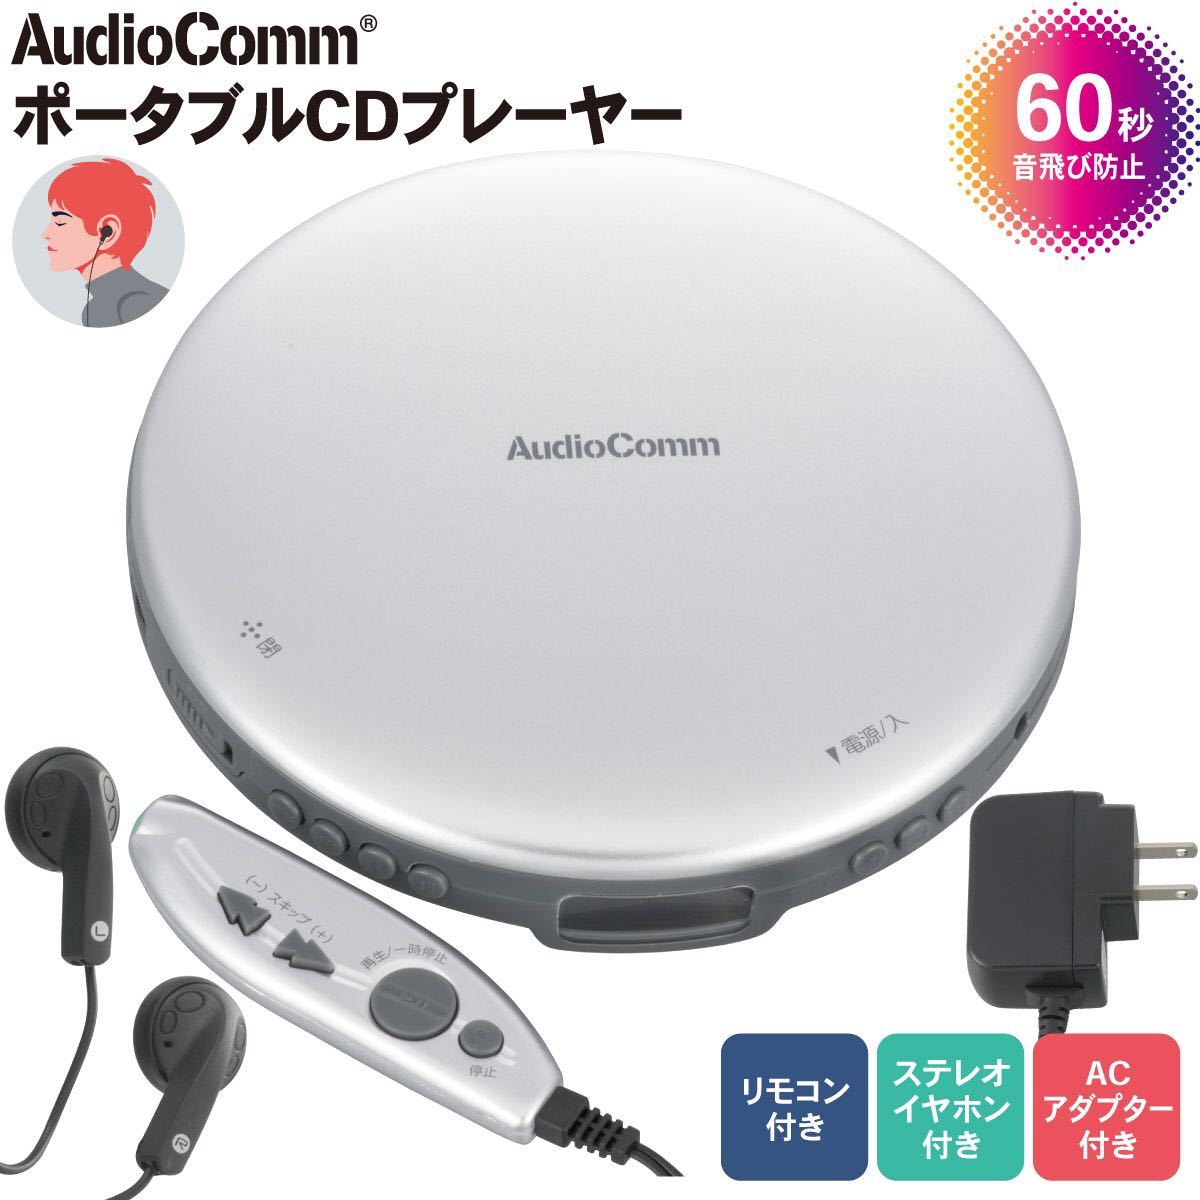 送料無料◆AudioComm ポータブルCDプレーヤー リモコン付き ACアダプター付き シルバー CDP-3870Z-S 新品